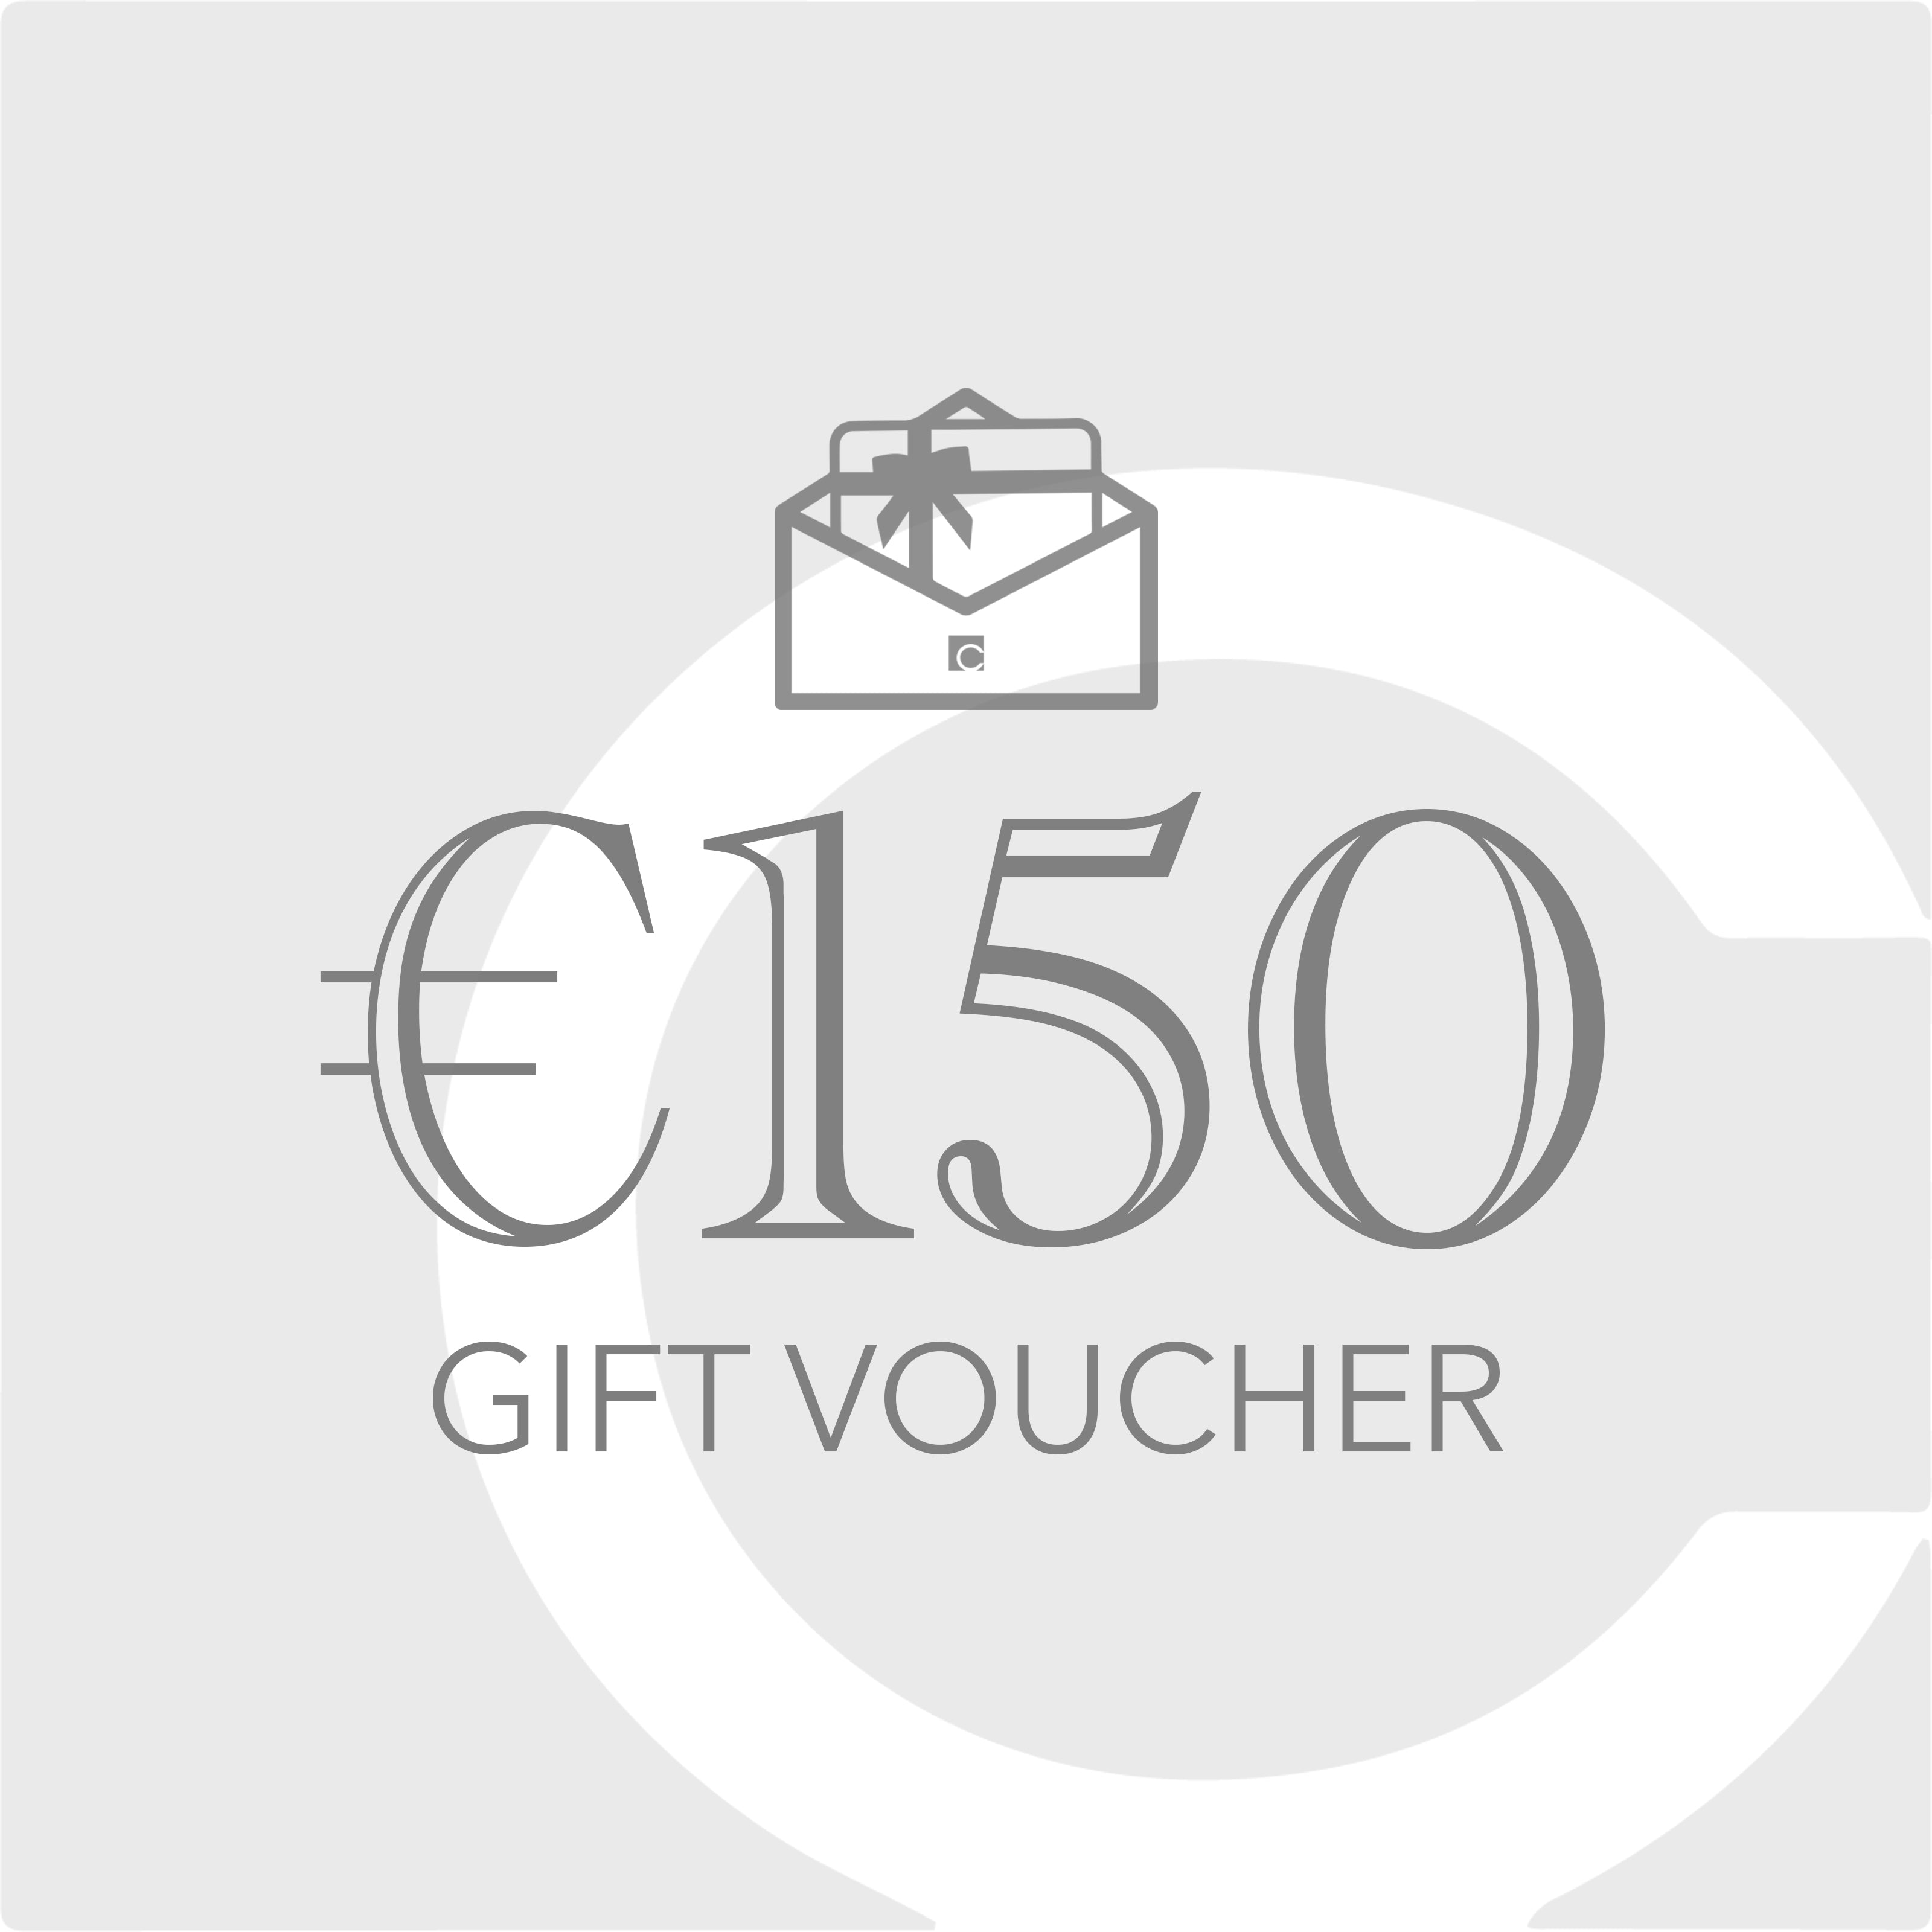 €150 Gift Voucher